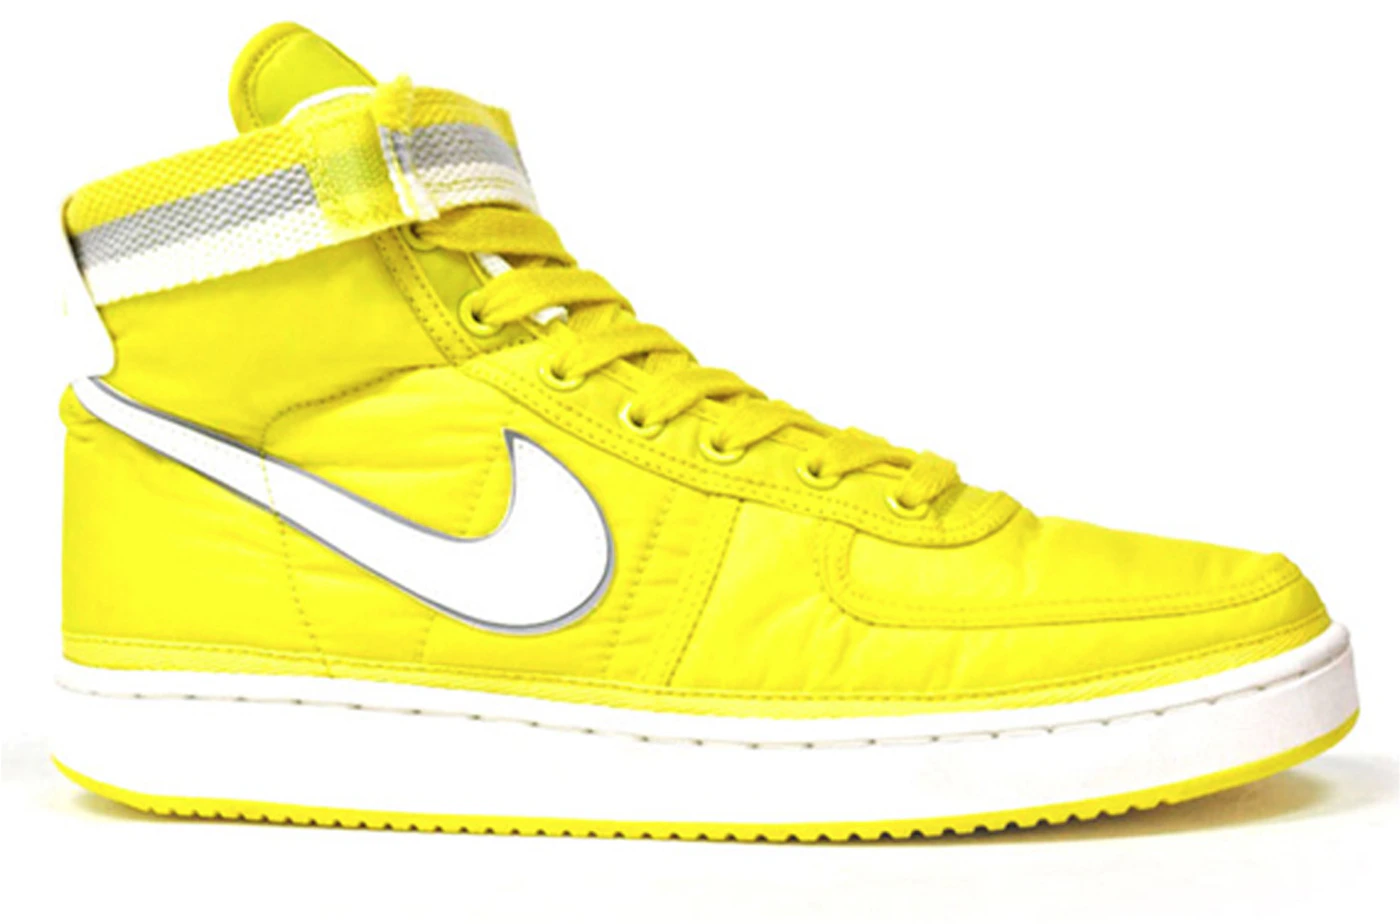 Nike Vandal High Supreme Sonic Yellow - 325317-700 - US